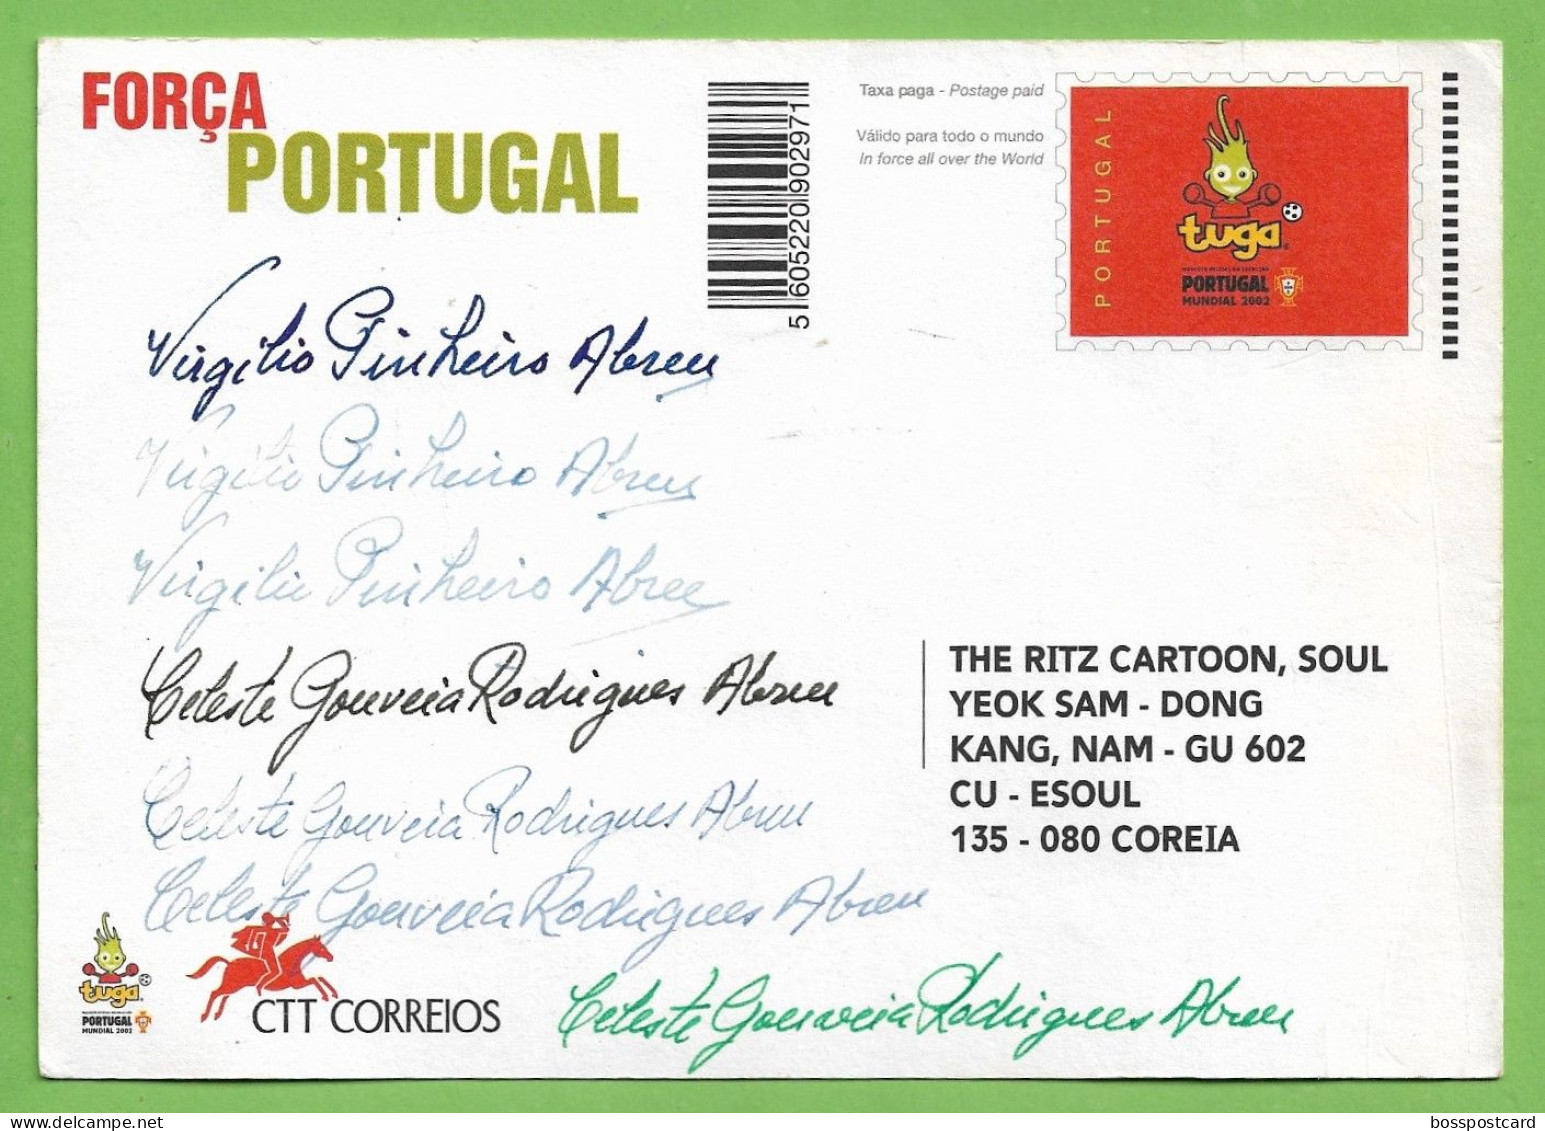 Lisboa - Selecção Nacional De Futebol No Mundial De 2002 - Estádio - Football - Stadium - Portugal - Fussball